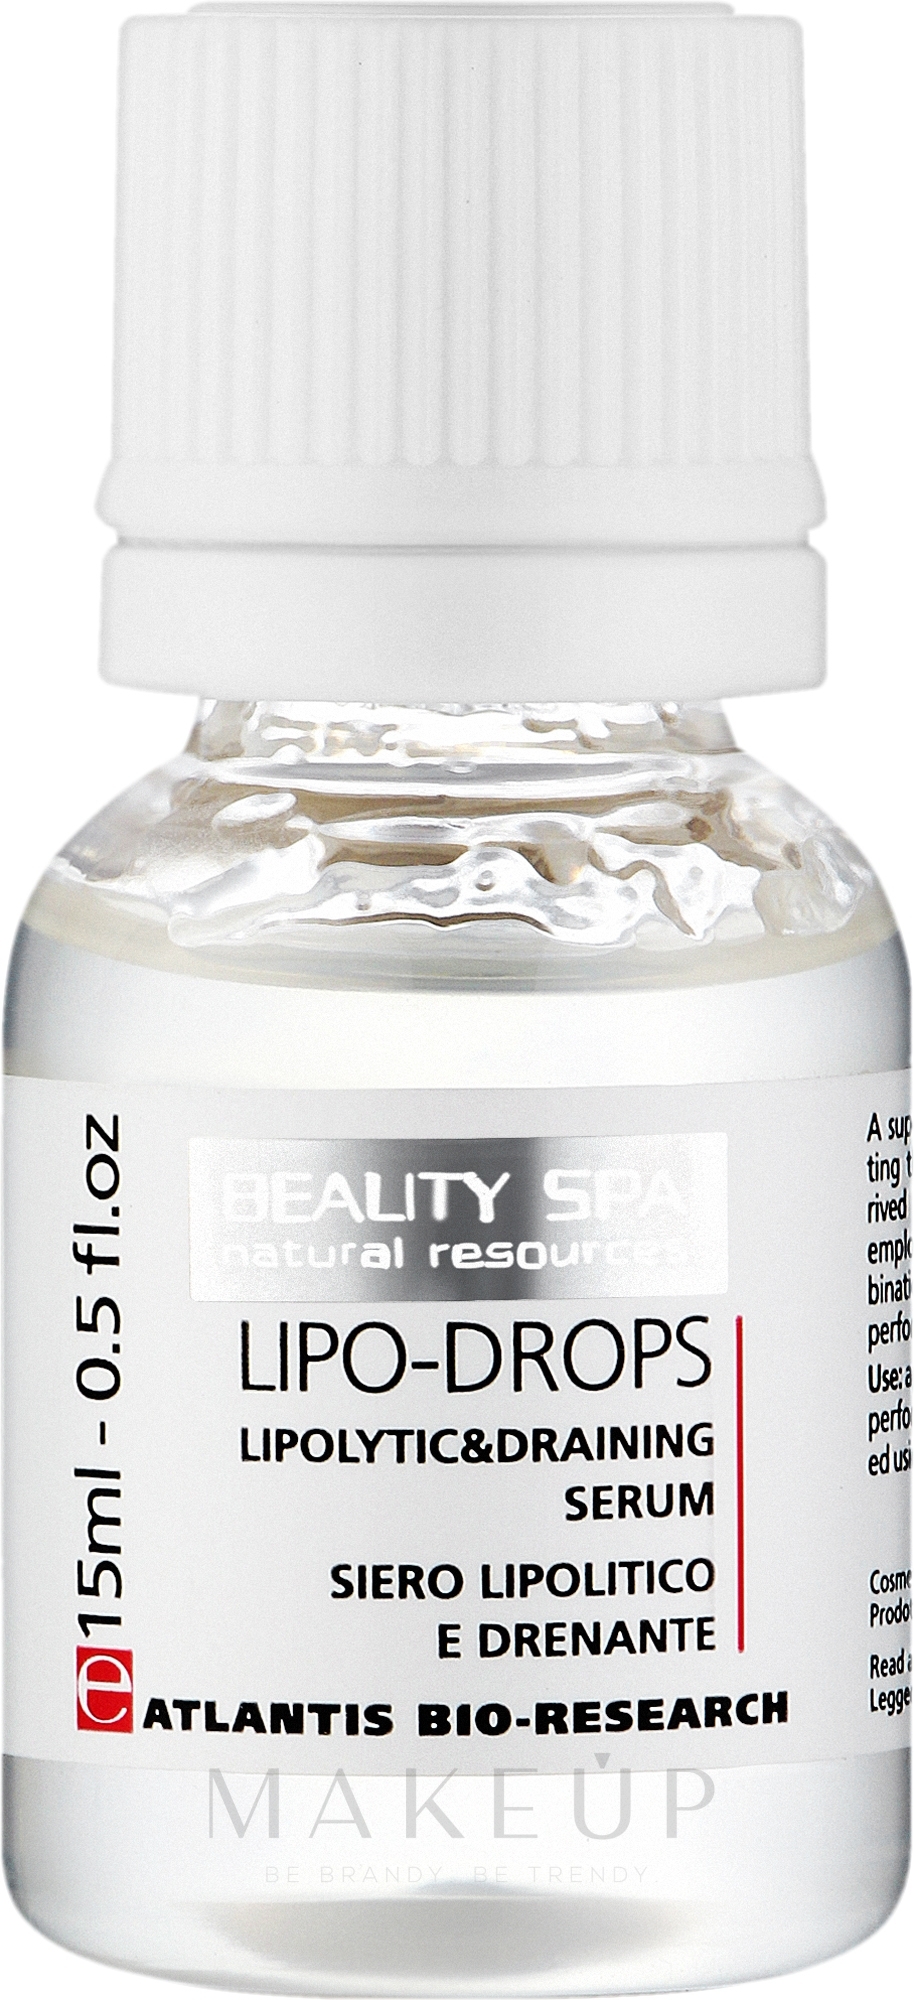 Lipolytisches Drainageserum für Gesicht und Körper - Beauty Spa Atlantis Lipo-Drops  — Bild 5 x 15 ml